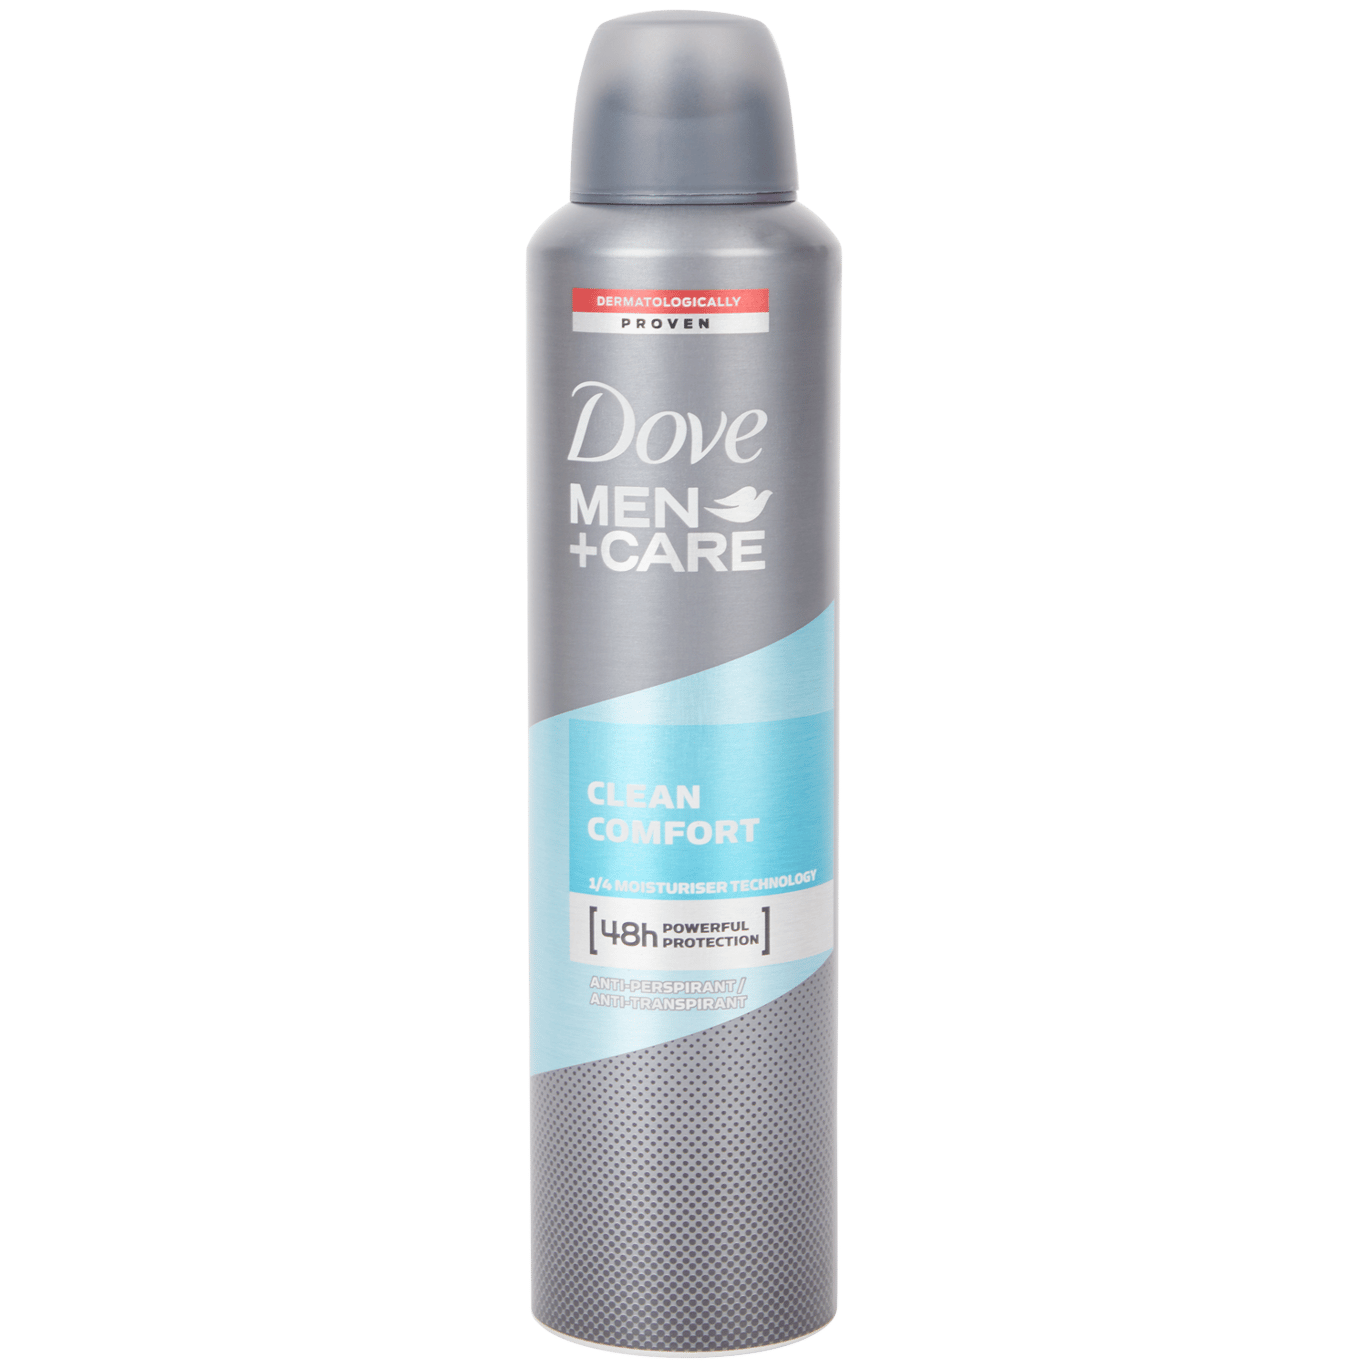 Dove Men+Care Men+Care Deodorant Clean Comfort